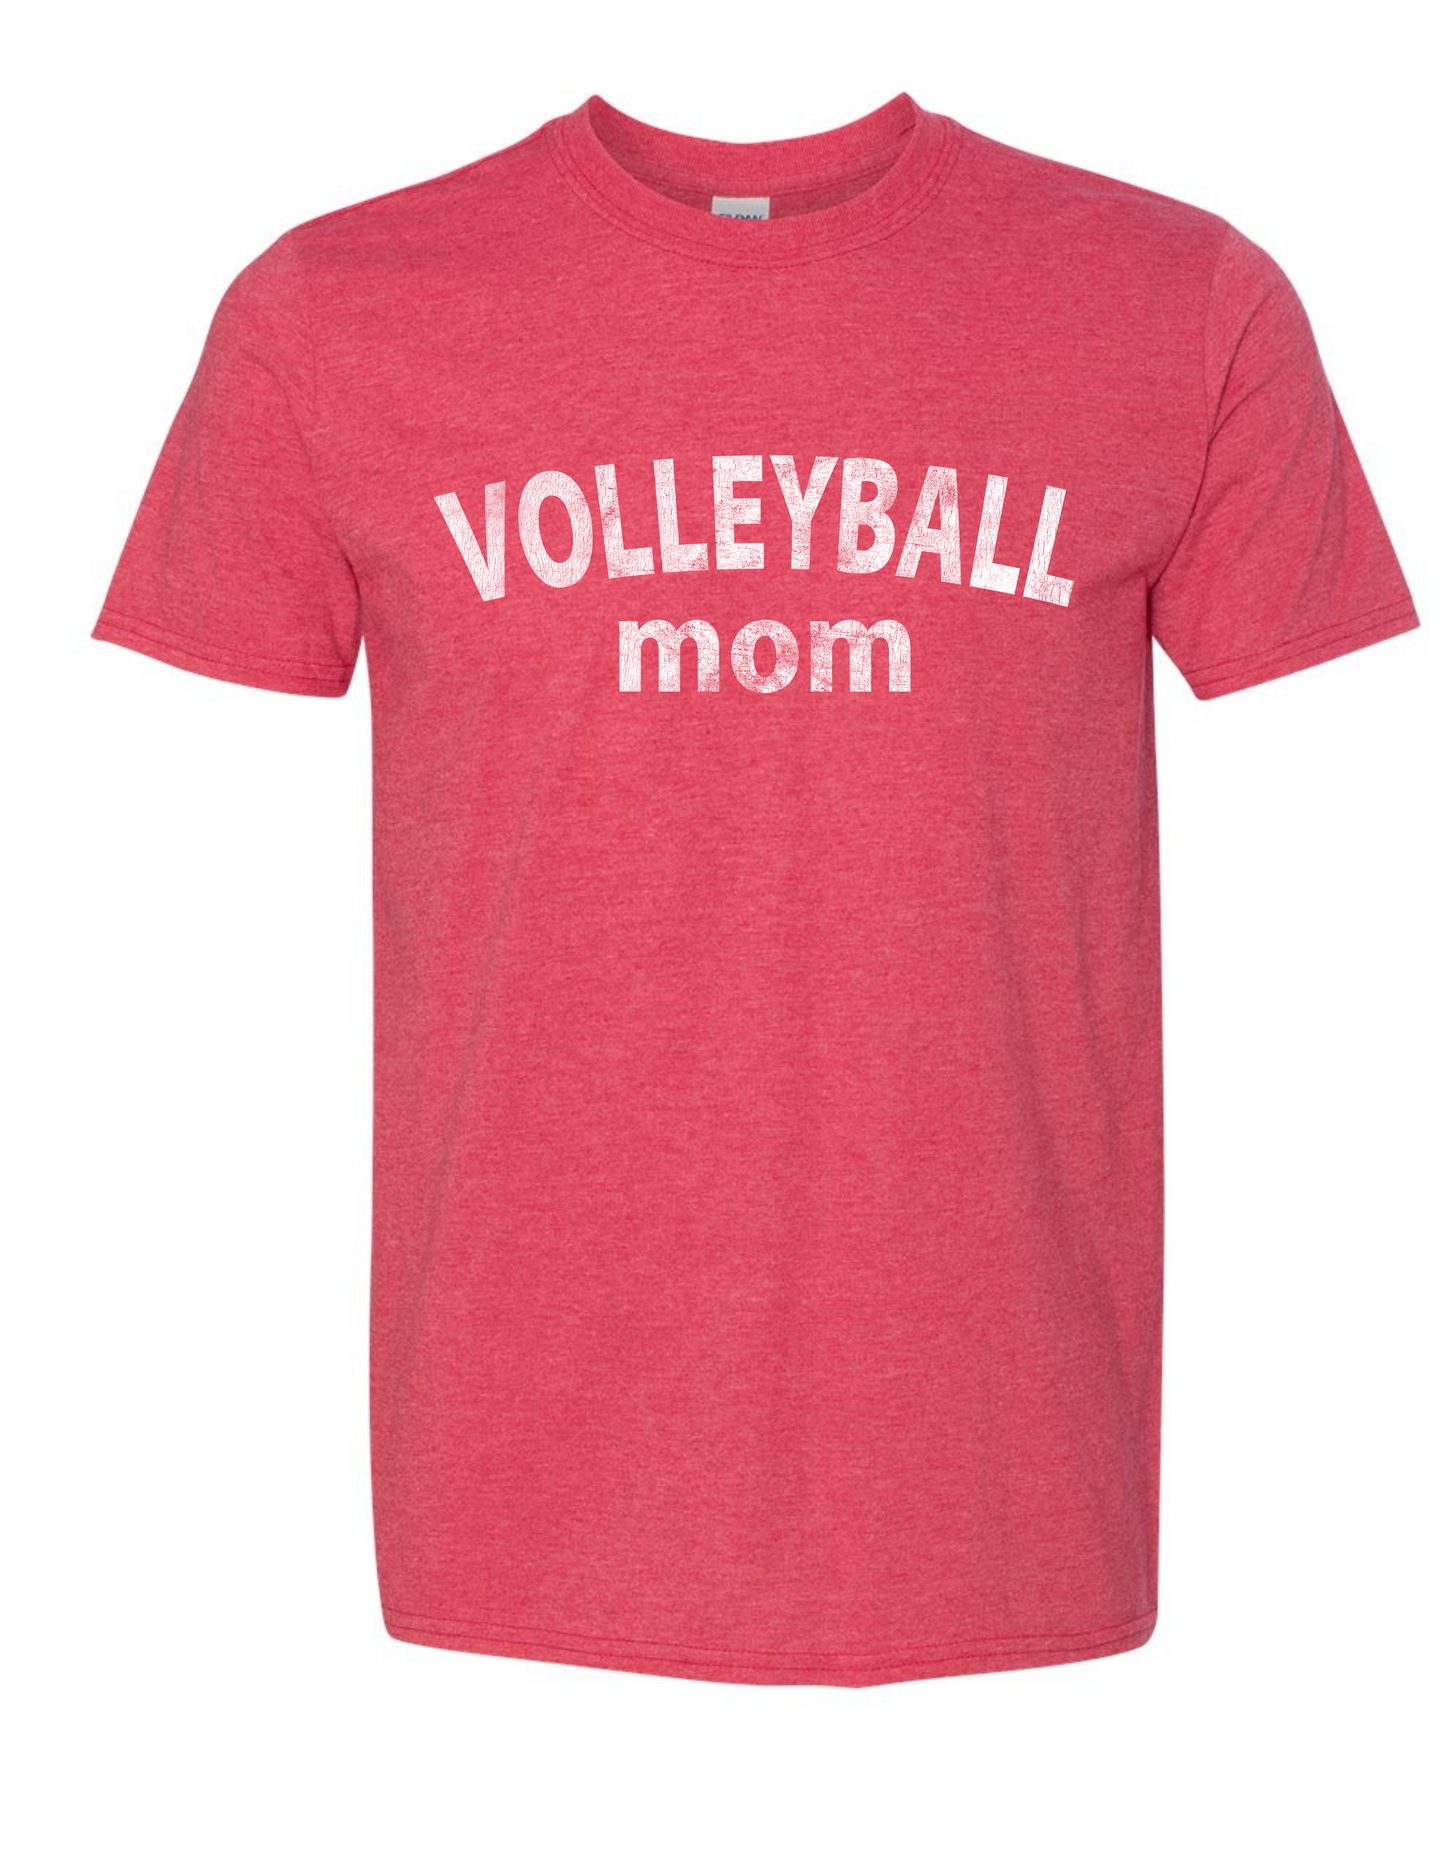 Mom Era - Volleyball